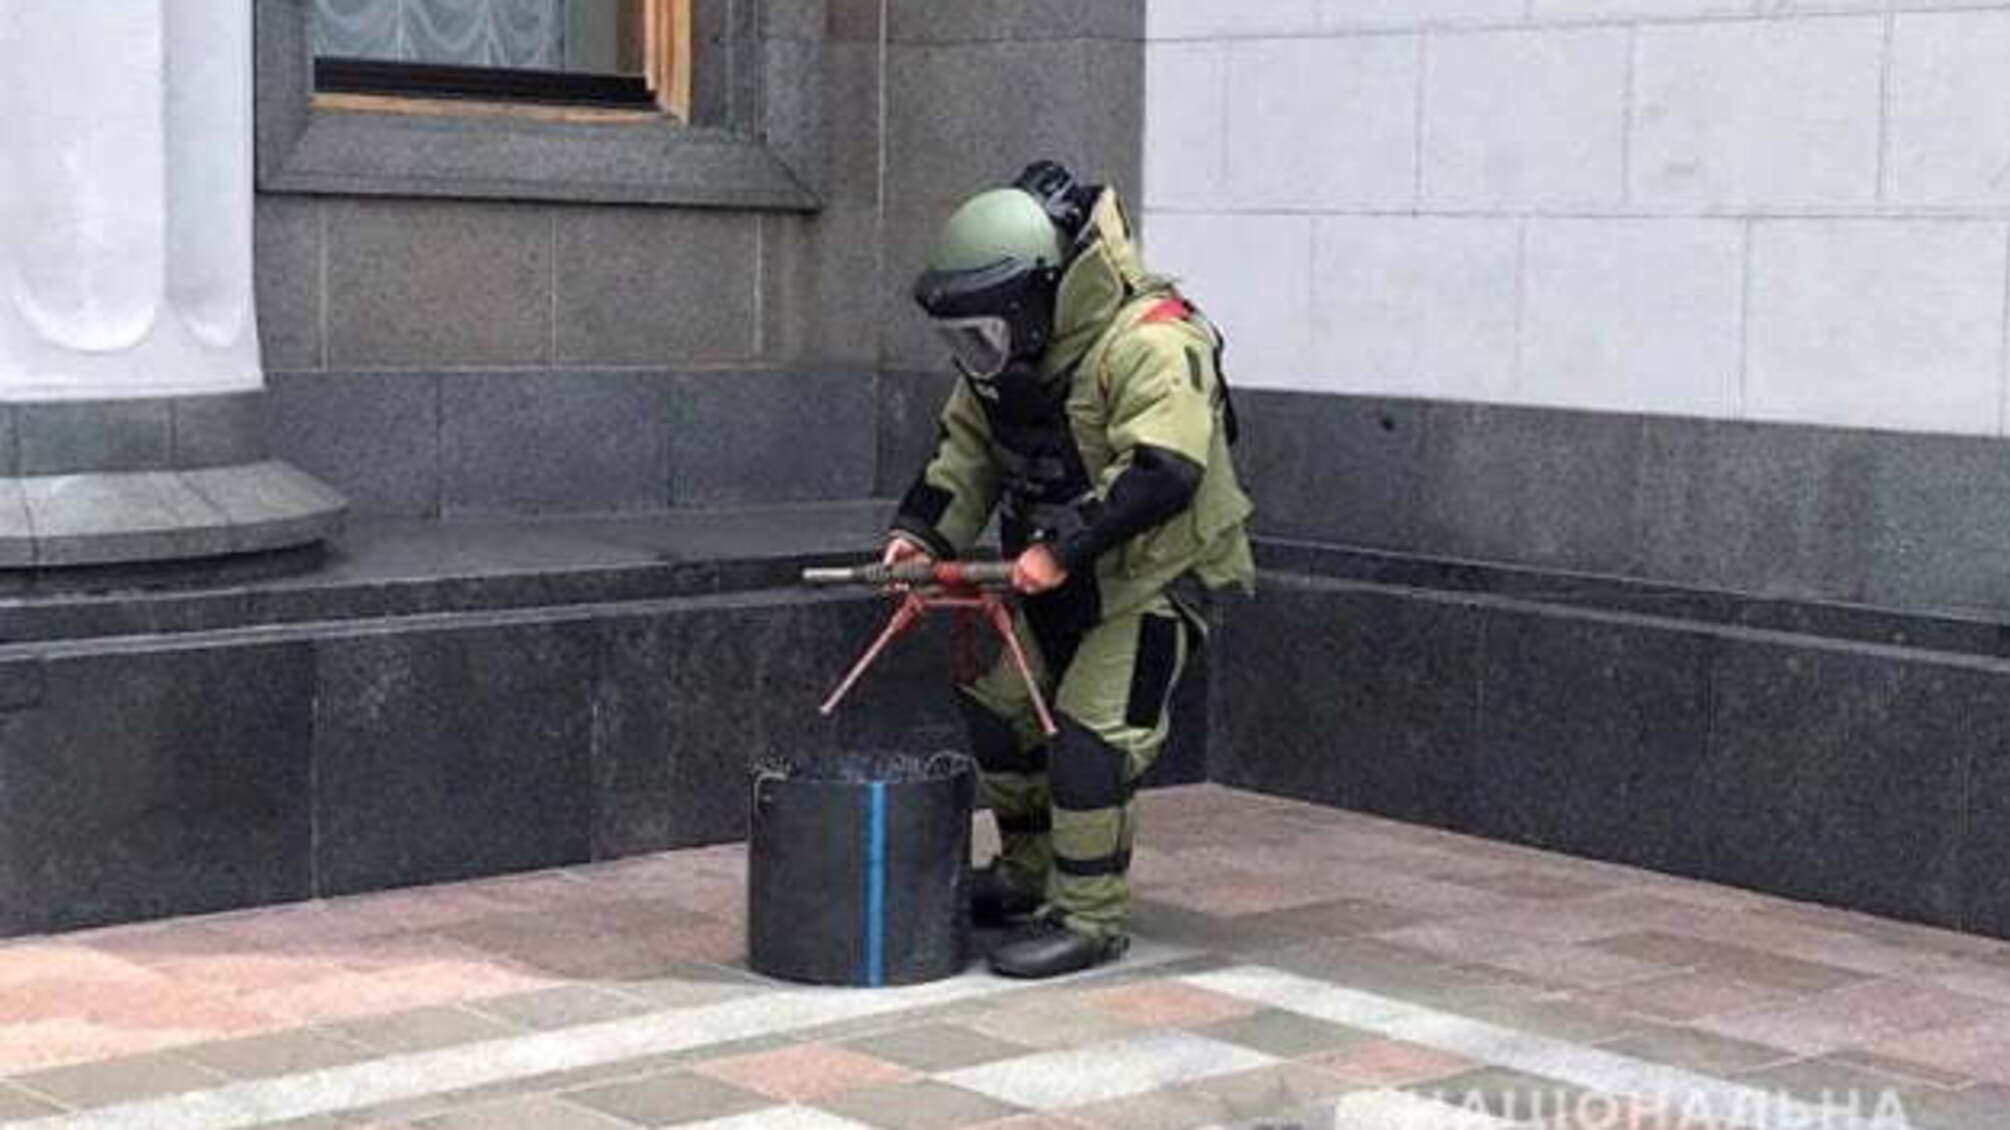 Поліція провела навчання у Києві - шукала підозрілі предмети біля адмінбудівель